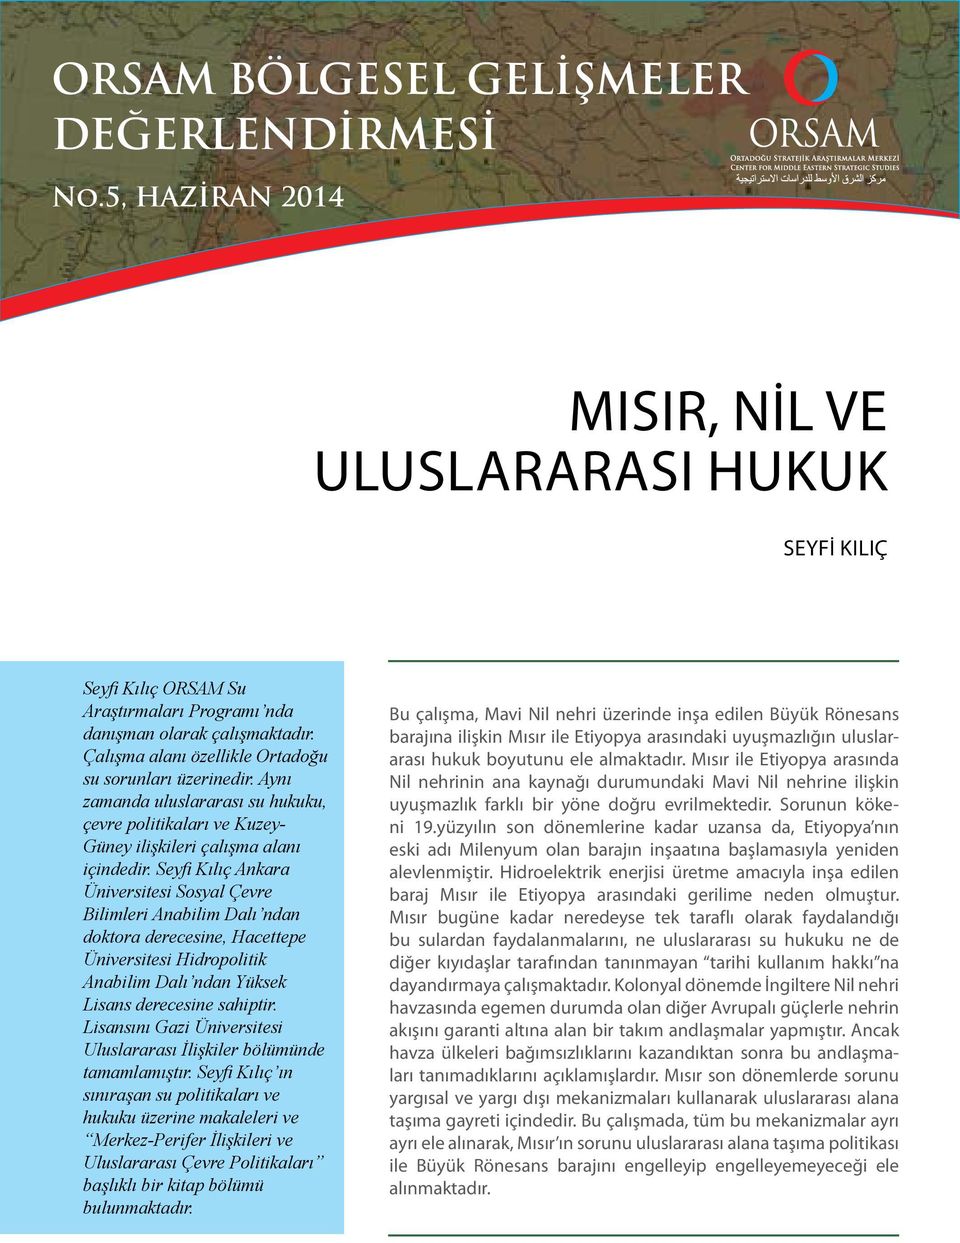 Seyfi Kılıç Ankara Üniversitesi Sosyal Çevre Bilimleri Anabilim Dalı ndan doktora derecesine, Hacettepe Üniversitesi Hidropolitik Anabilim Dalı ndan Yüksek Lisans derecesine sahiptir.